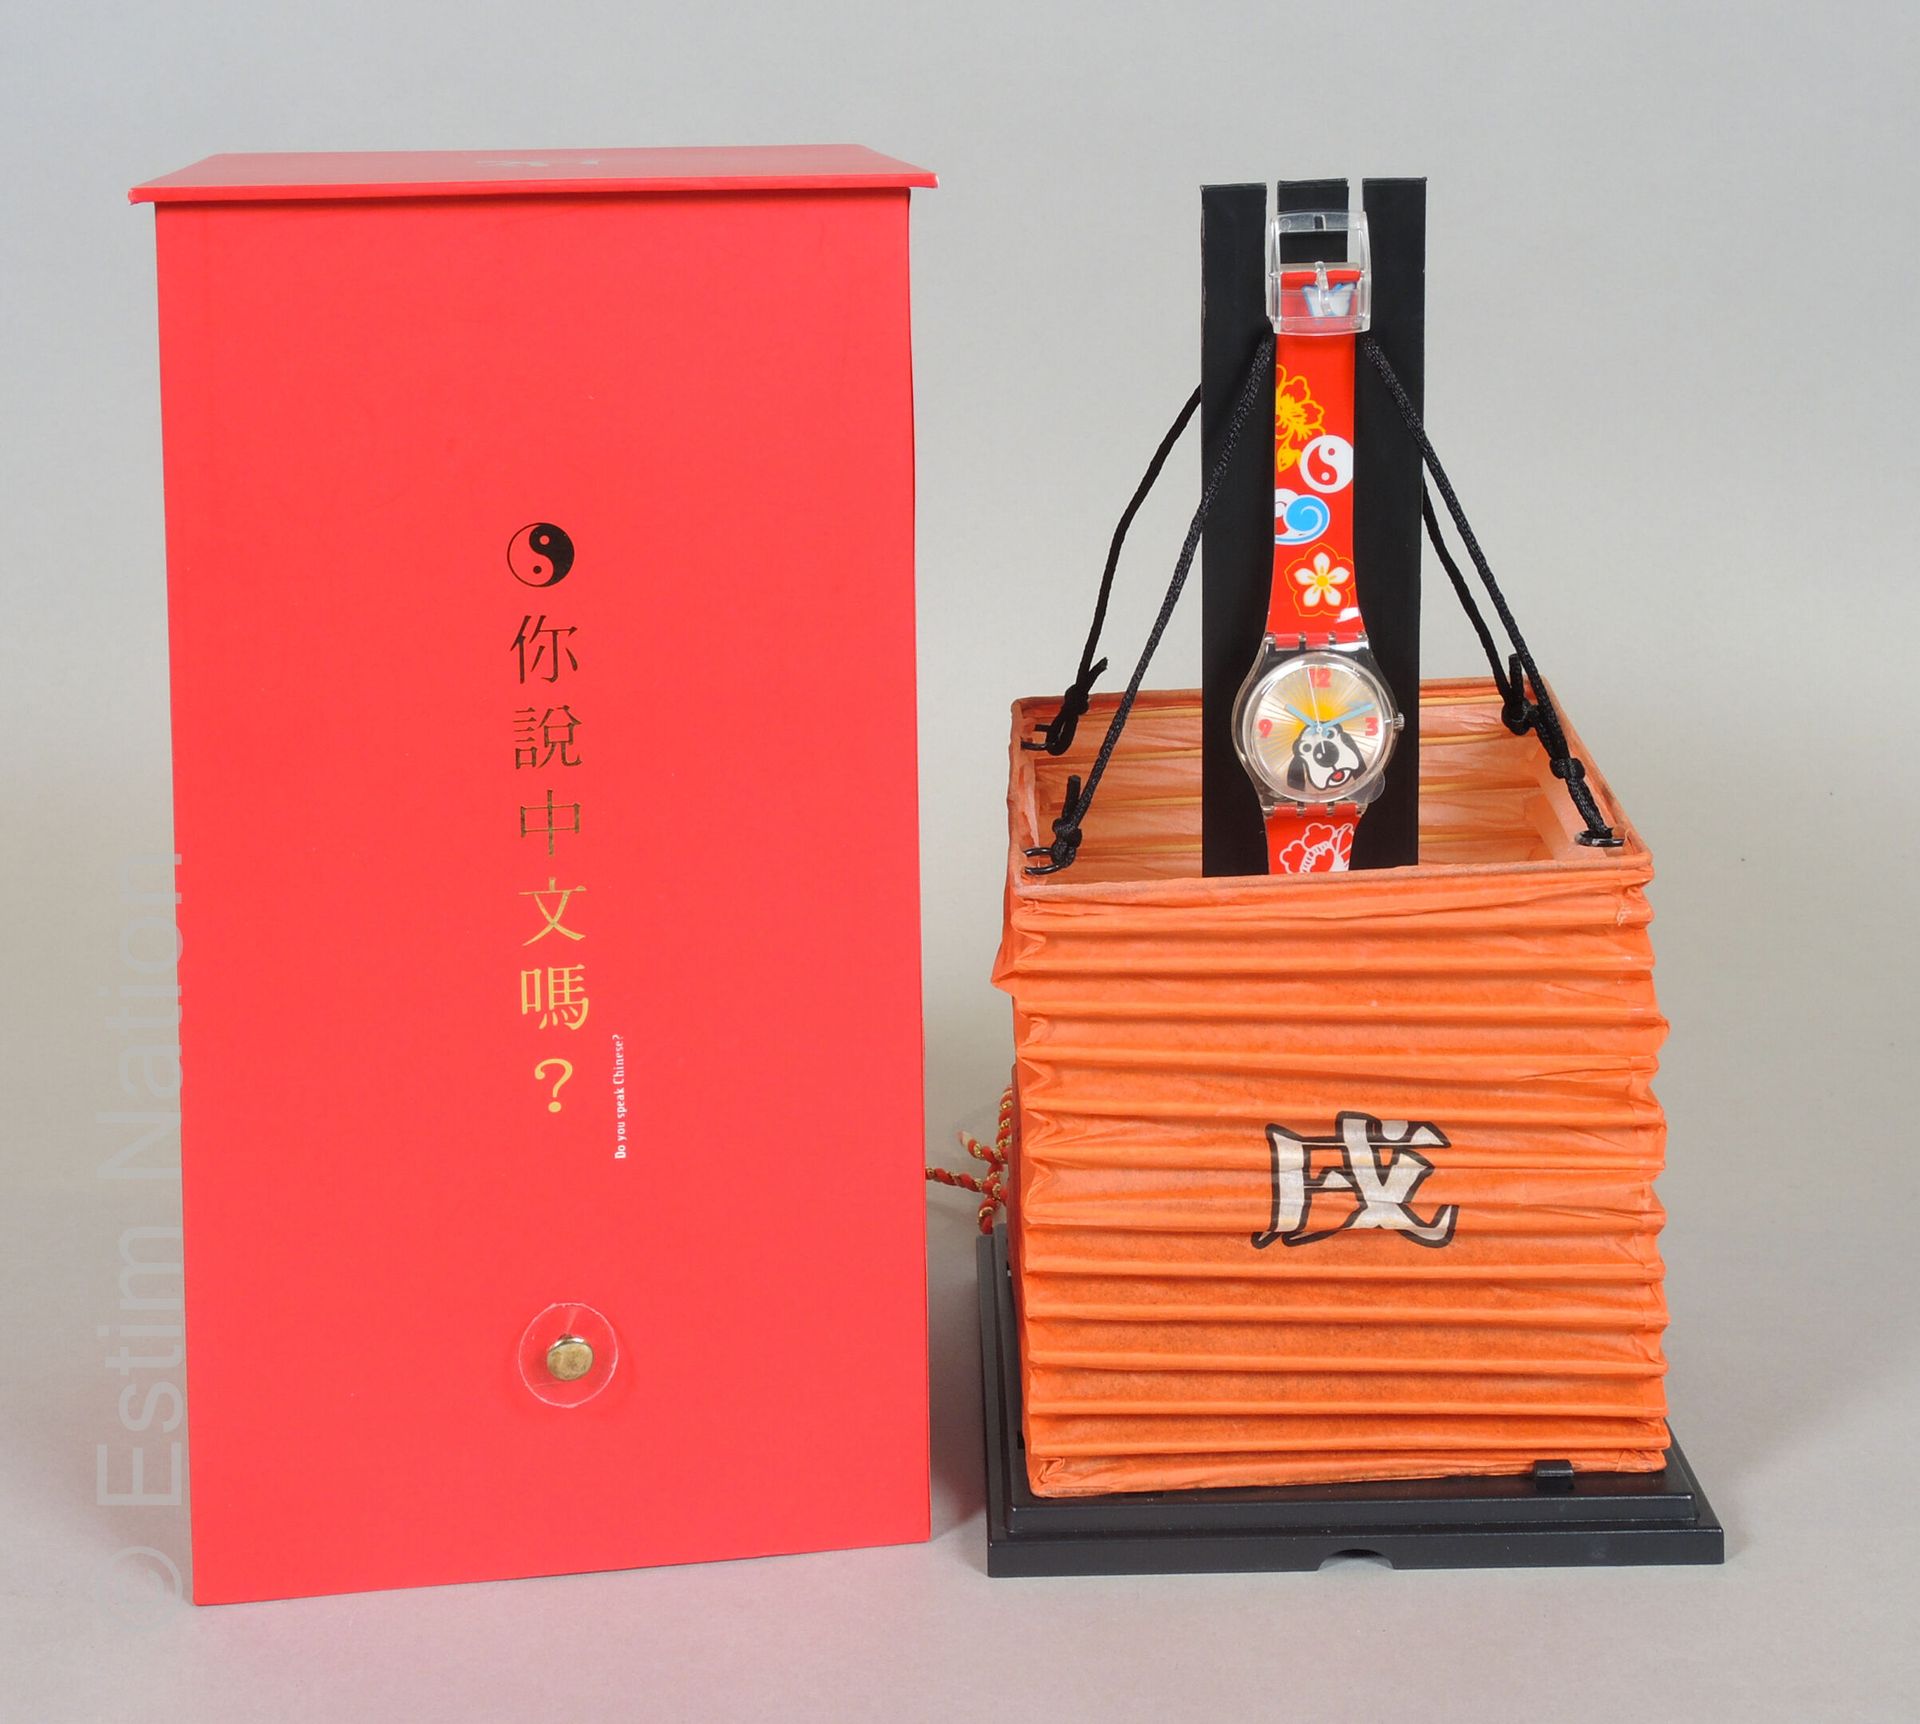 SWATCH - GOU LAI FU - 2006 拭目以待 - 顾来福

原创：绅士



2006年中国新年限量版套装，包括一个模拟红橙色背景的狗头装饰的&hellip;